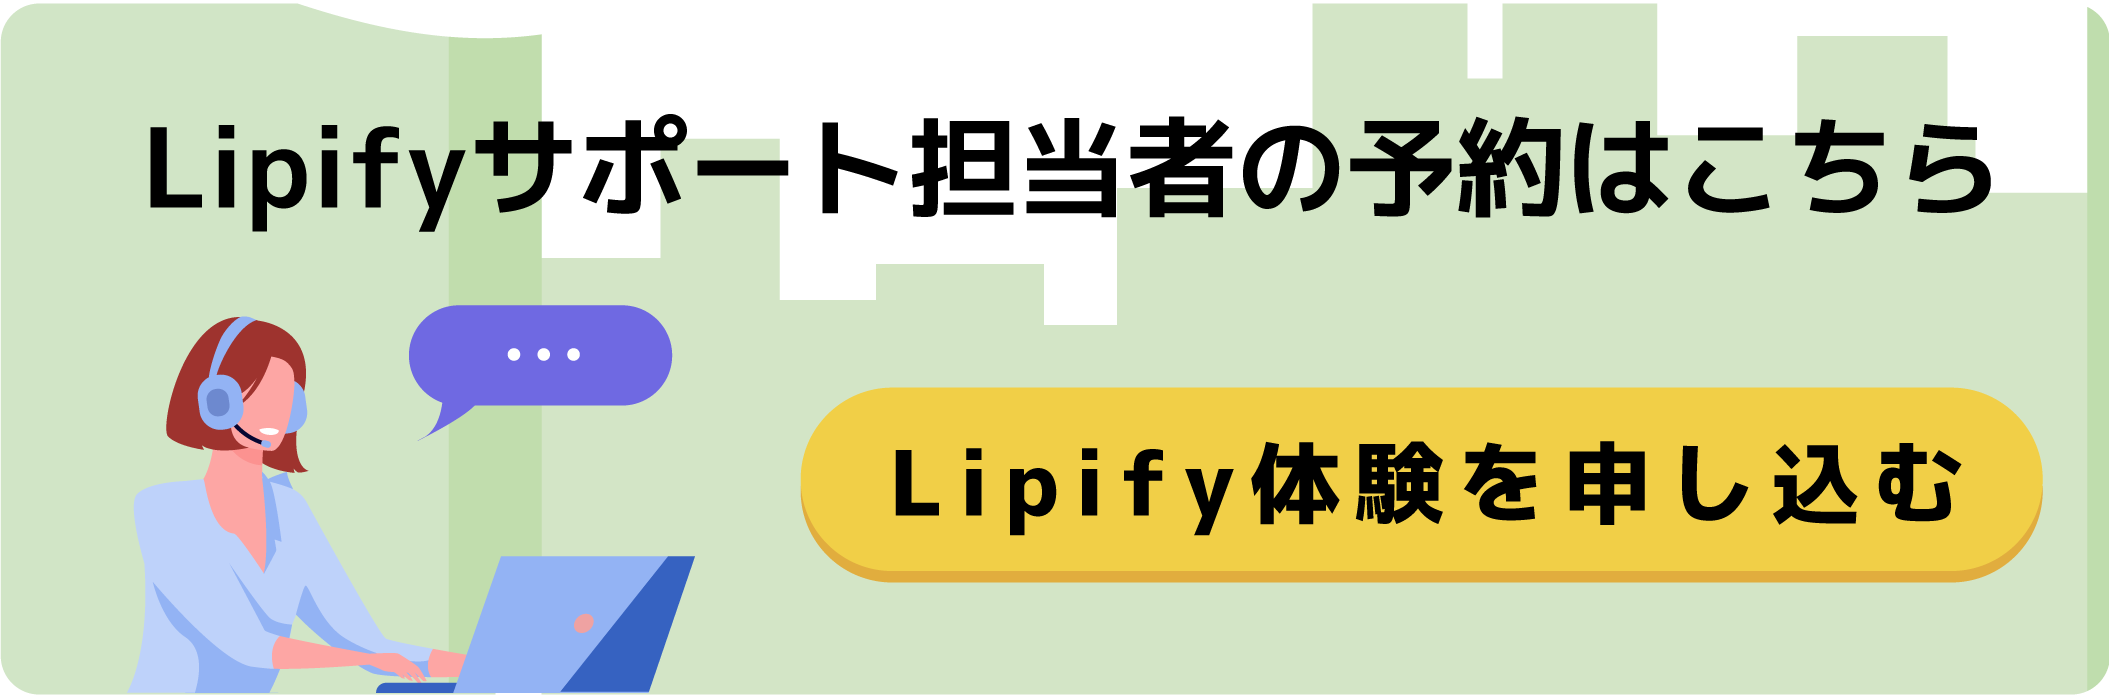 Lipifyサポート担当者の予約はこちら、Lipify体験を申し込む